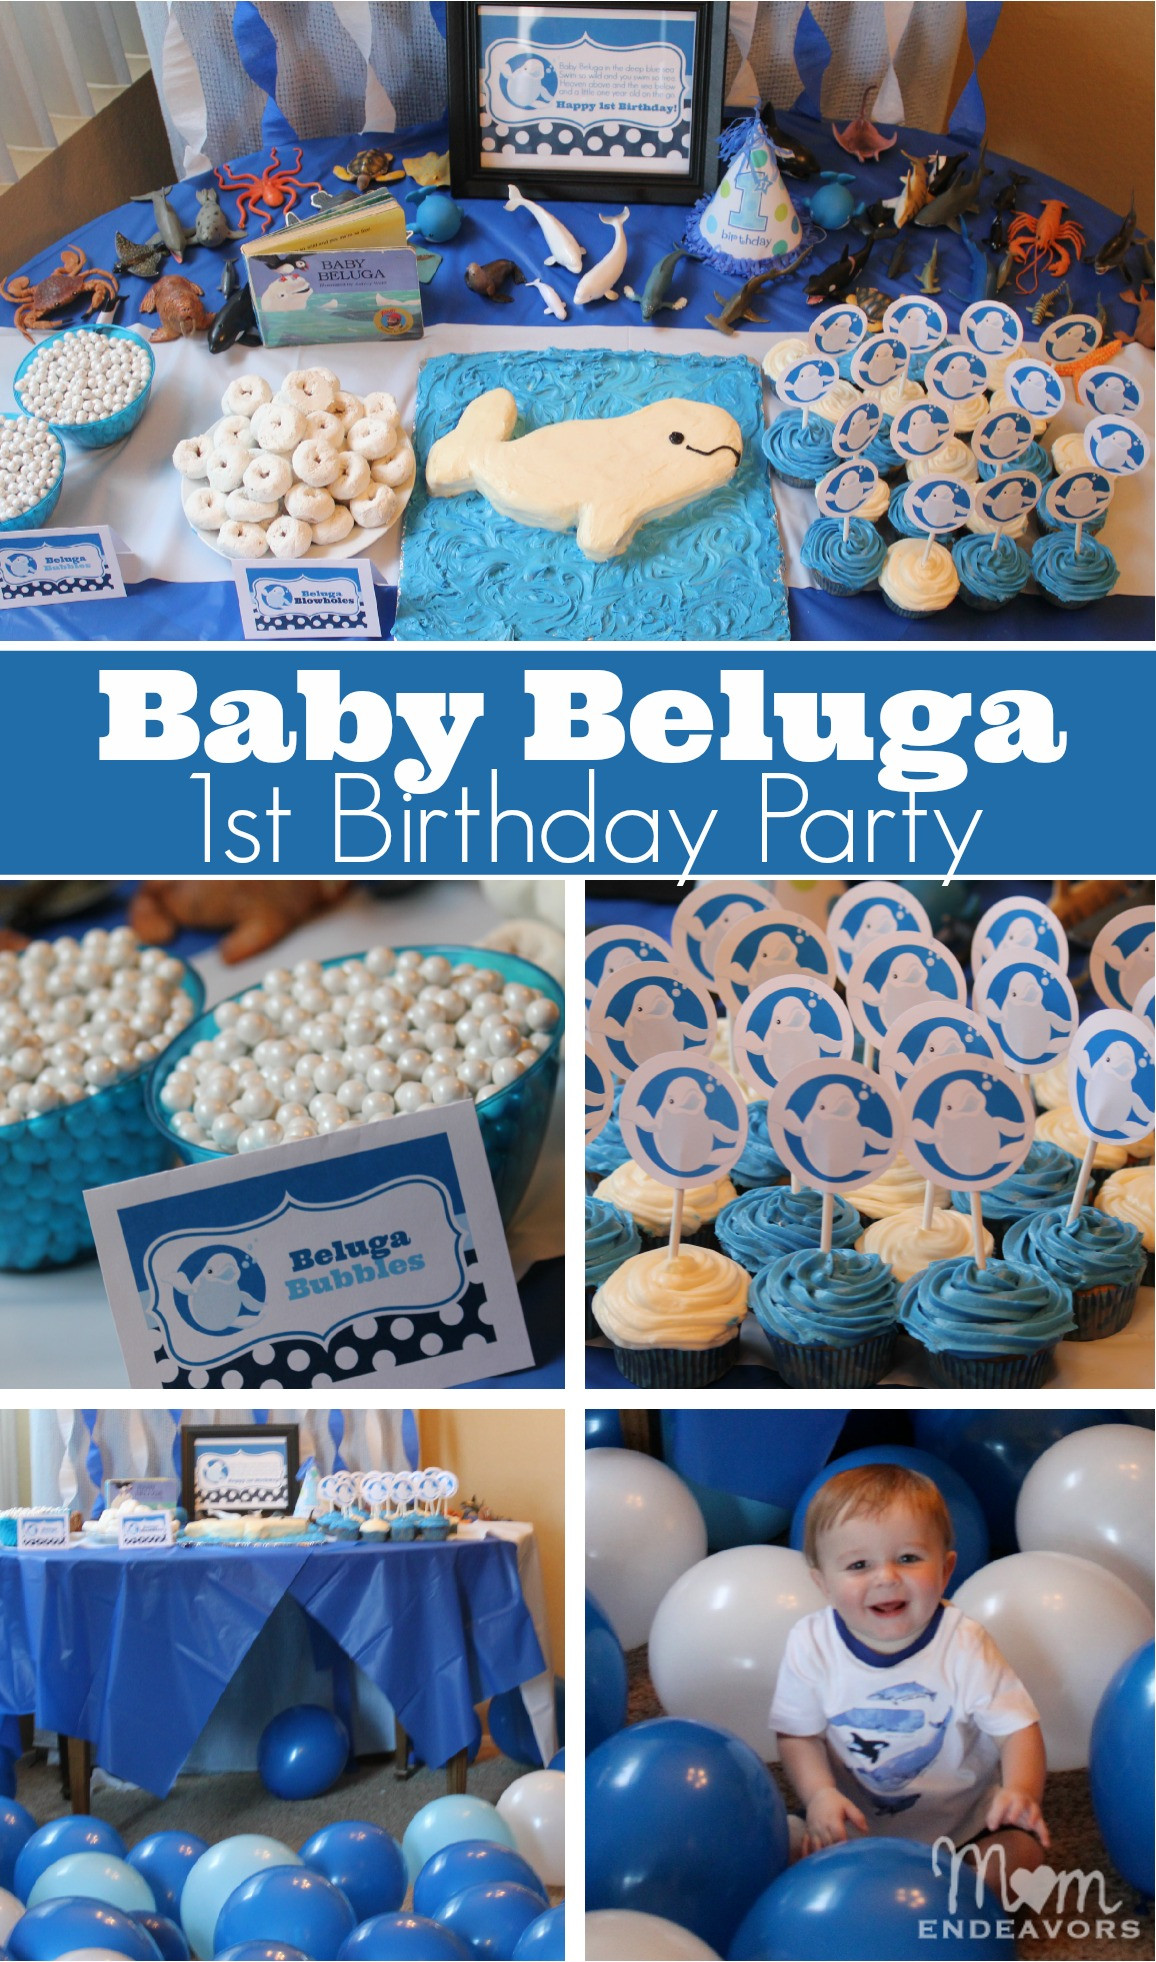 Baby Boys 1St Birthday Decorations
 Baby Beluga 1st Birthday Party